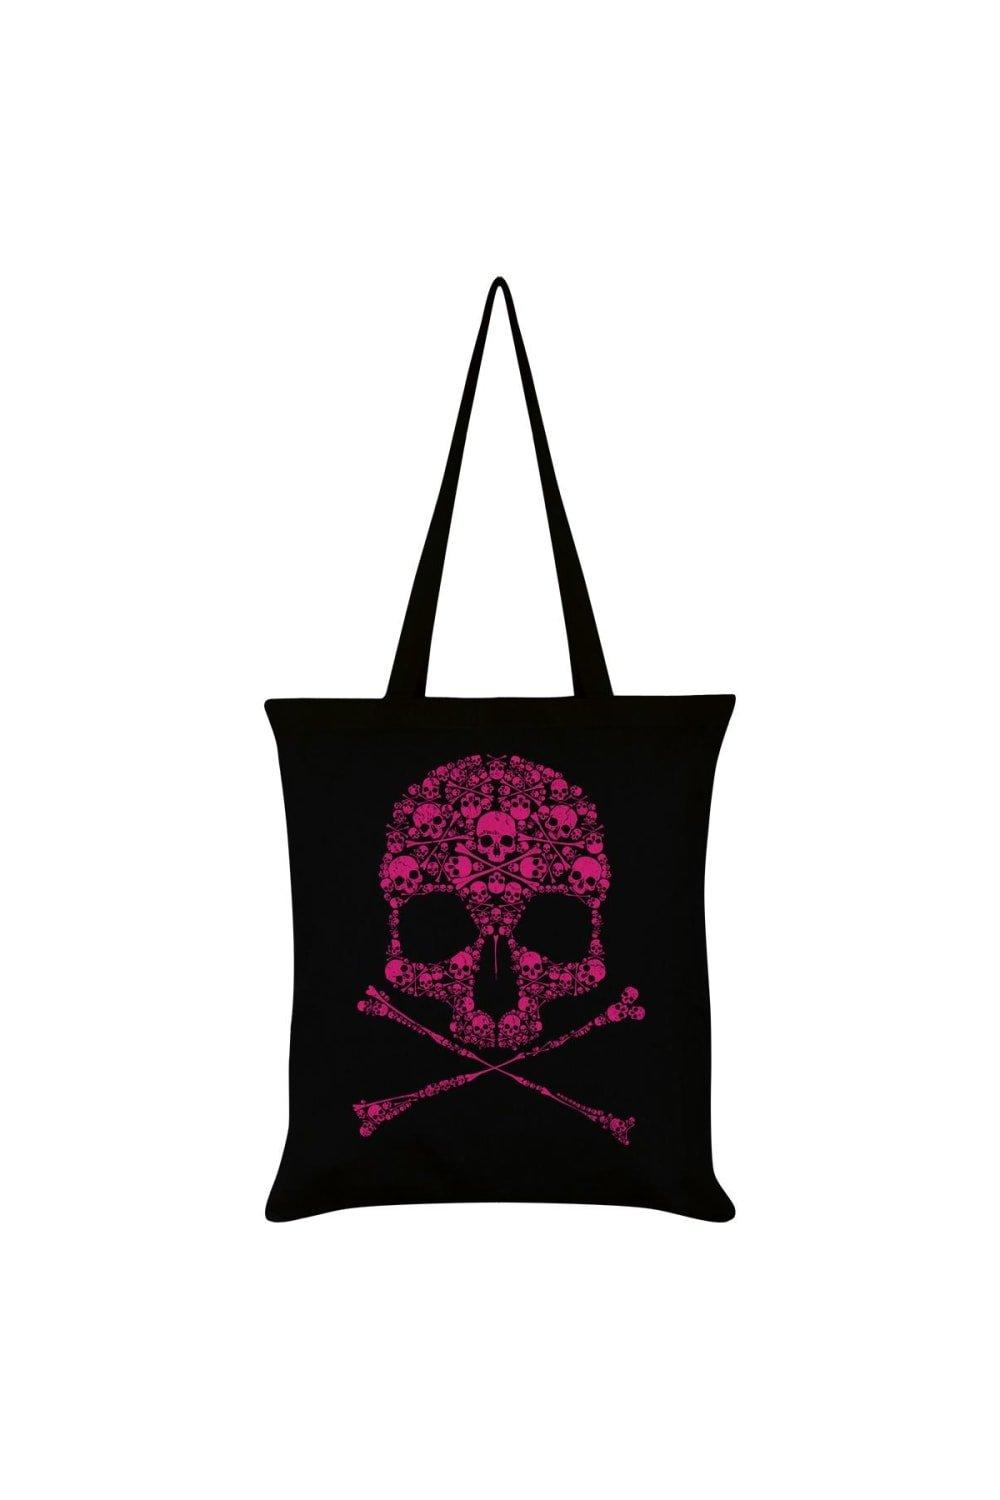 Большая сумка-тоут с черепом Unorthodox Collective, черный фетровая сумка тоут ярко розовый